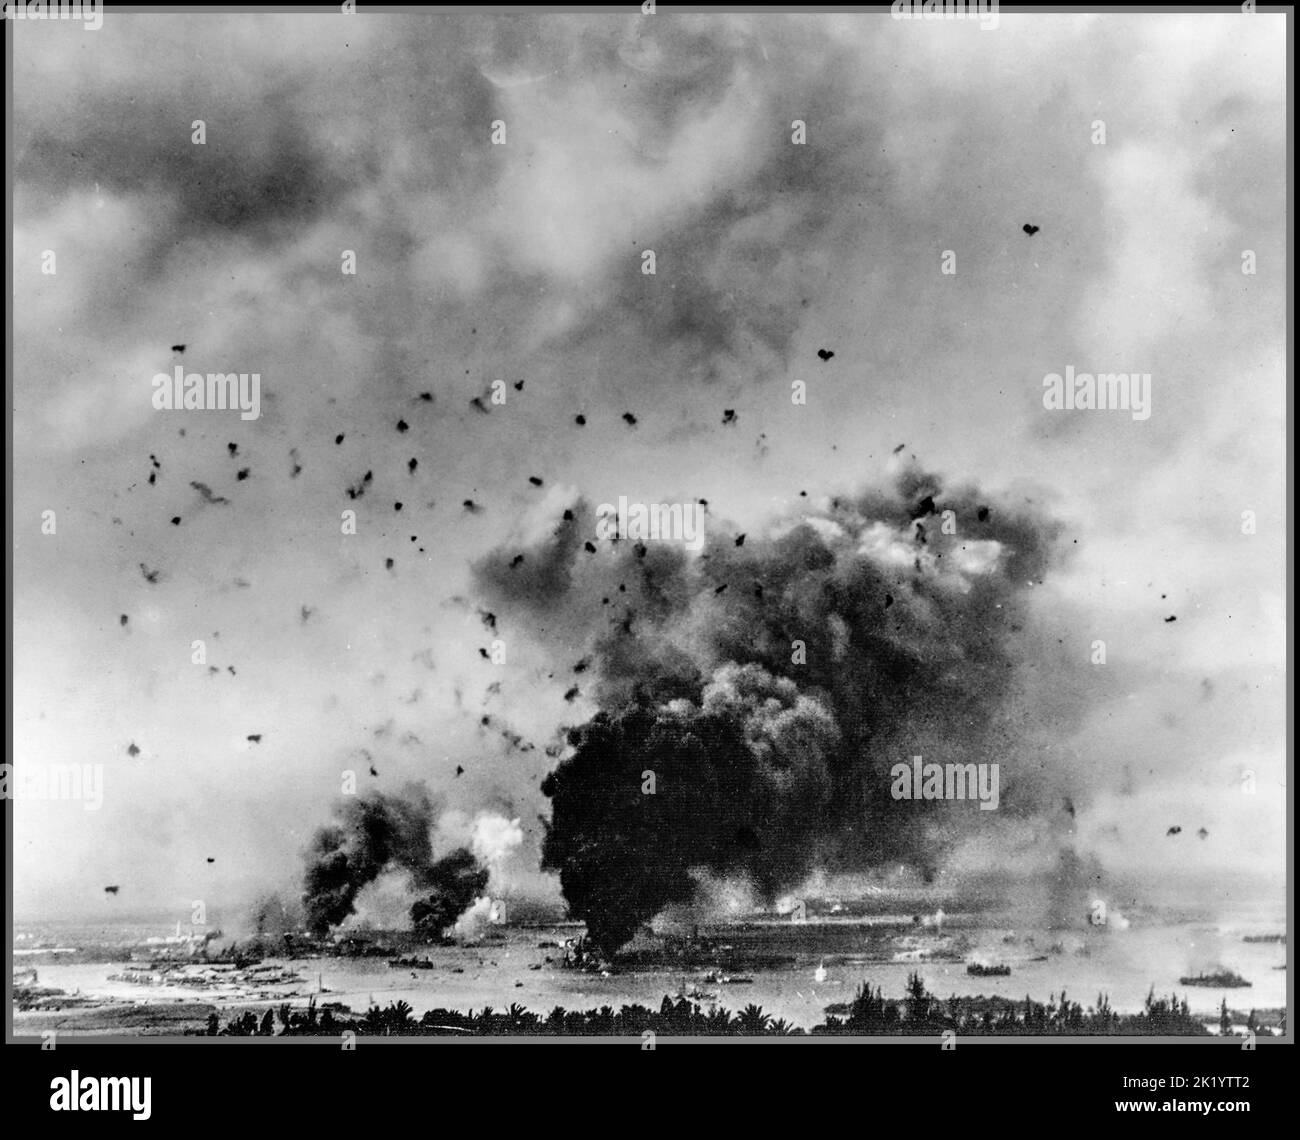 ATTACCO DI PEARL HARBOR visione generale dell'attacco a sorpresa giapponese con le corazzate americane colpite e bruciate a Pearl Harbor con un fuoco antiaereo che riempie il cielo, durante la famigerata offensiva giapponese del 7th dicembre 1941. Foto Stock